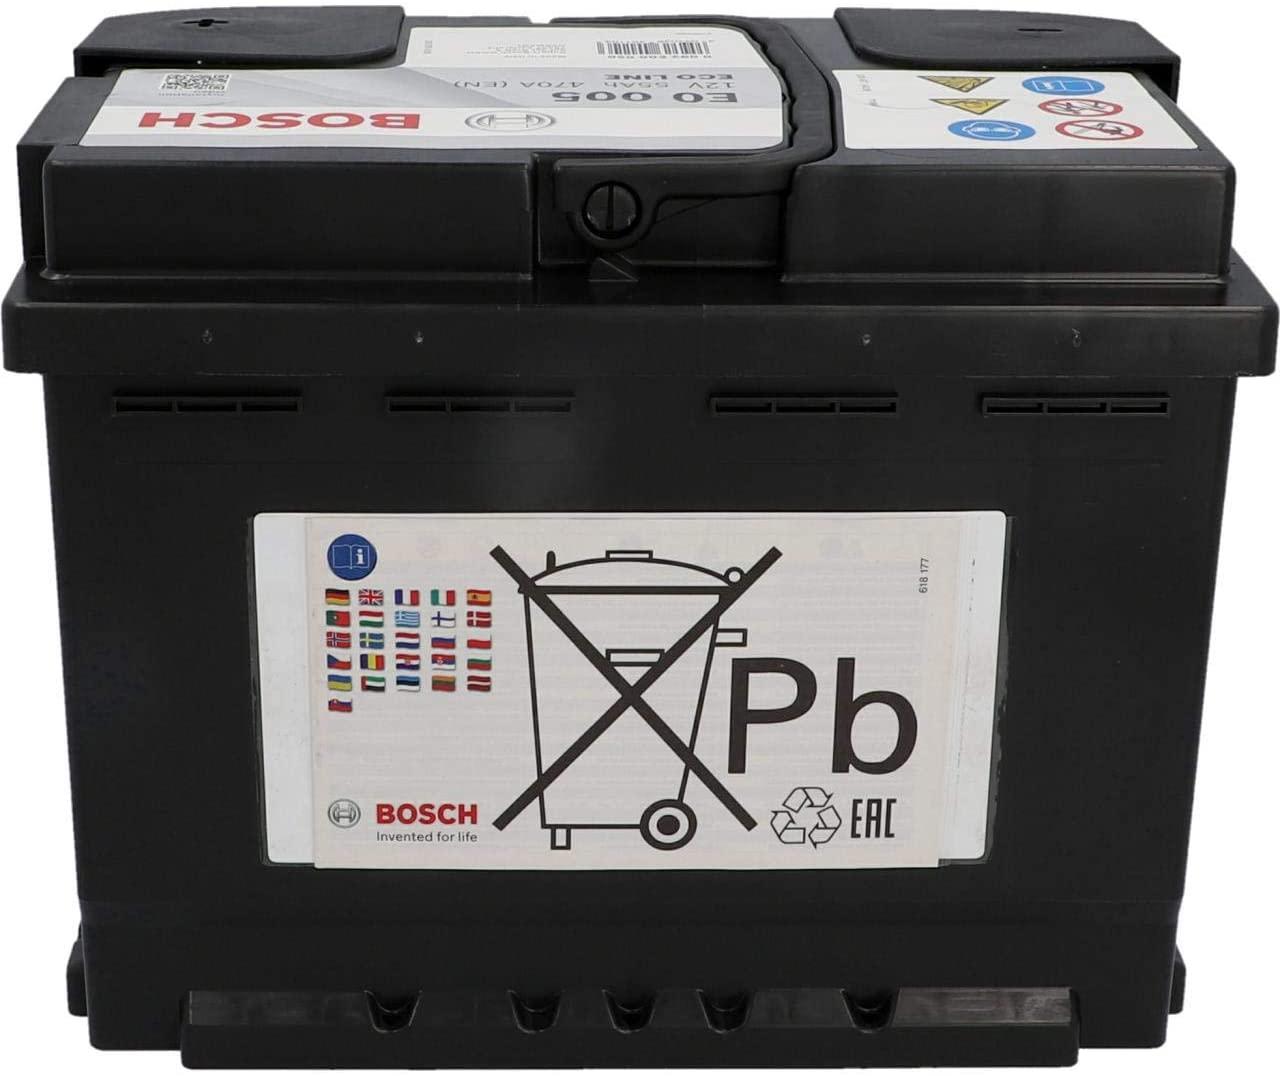 Batteria per Auto Bosch PB 55AH 470A E0 005 